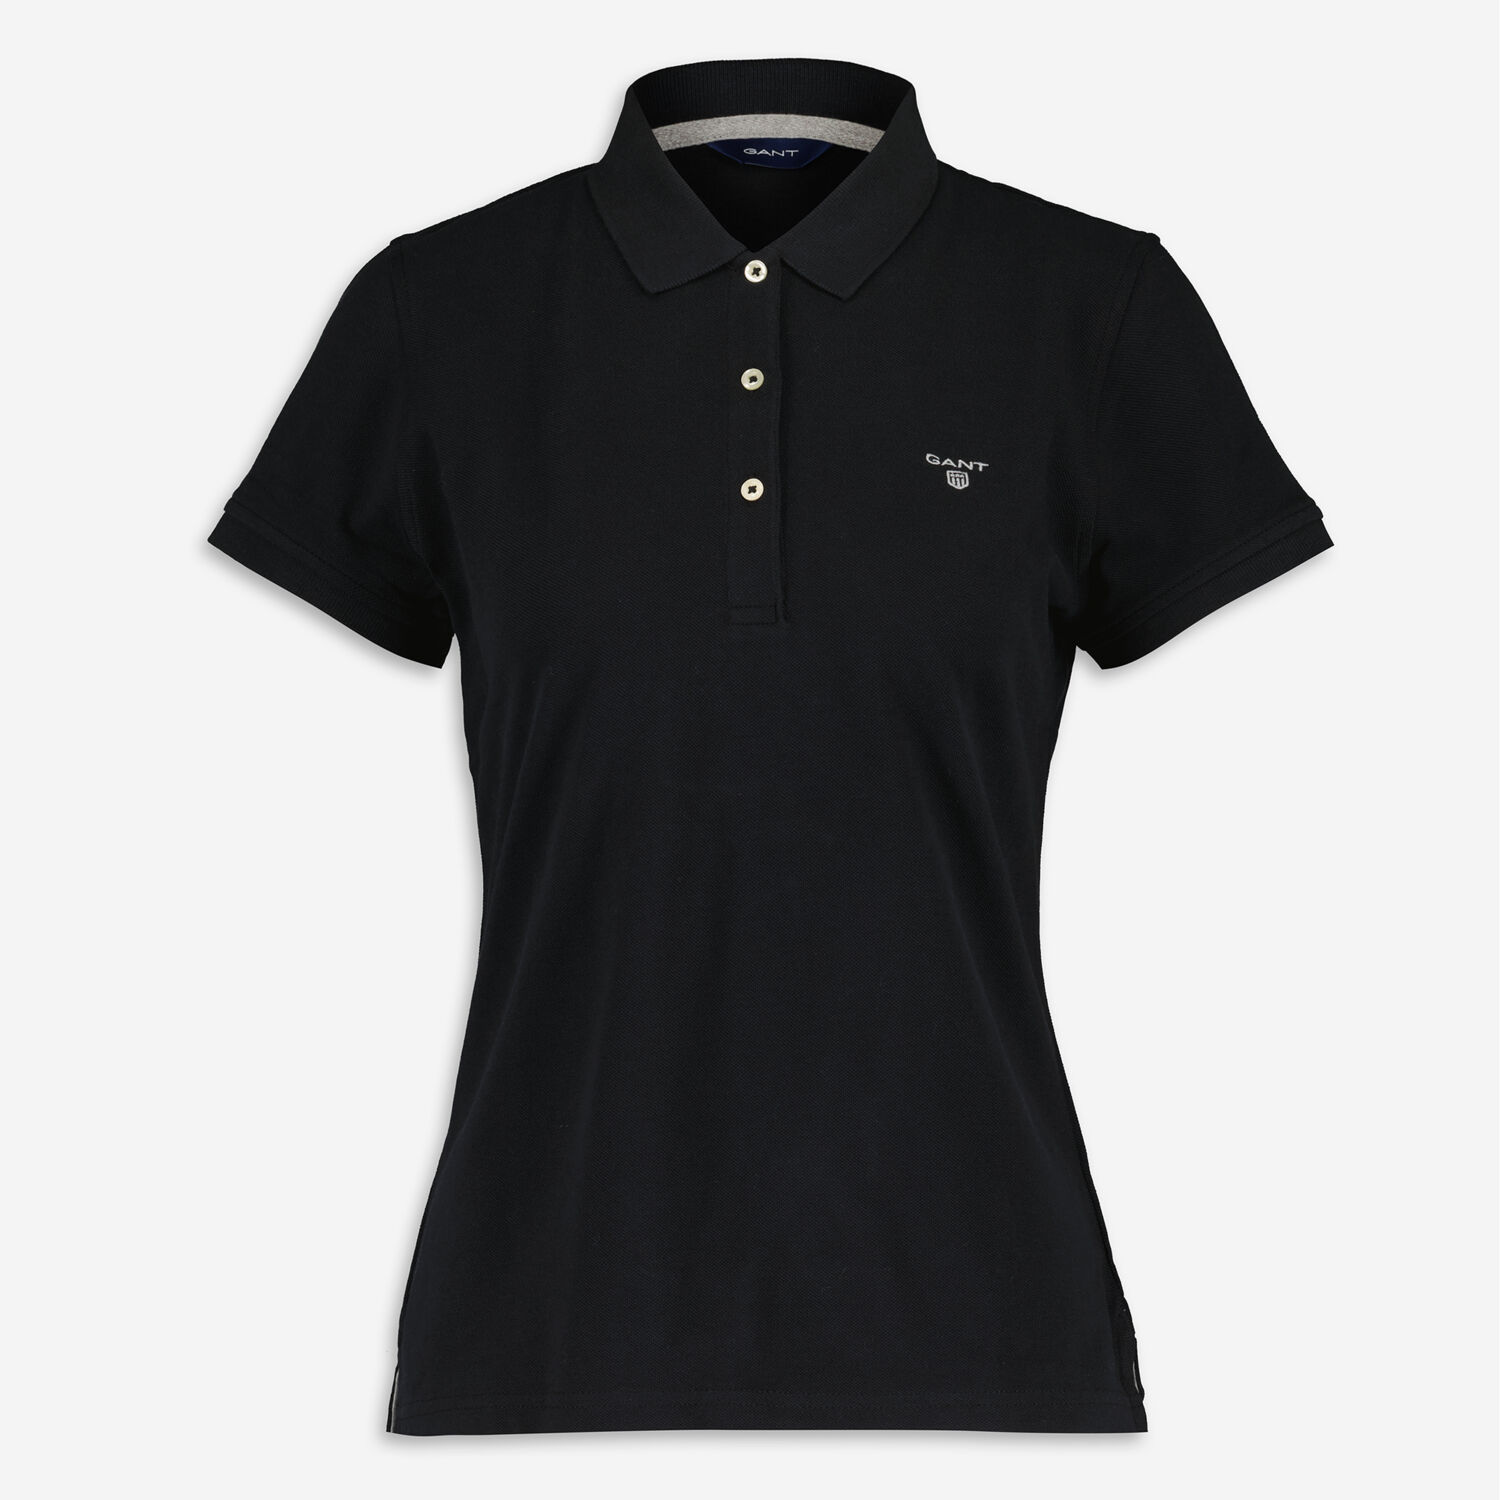 Черная рубашка-поло с вышивкой логотипа Gant